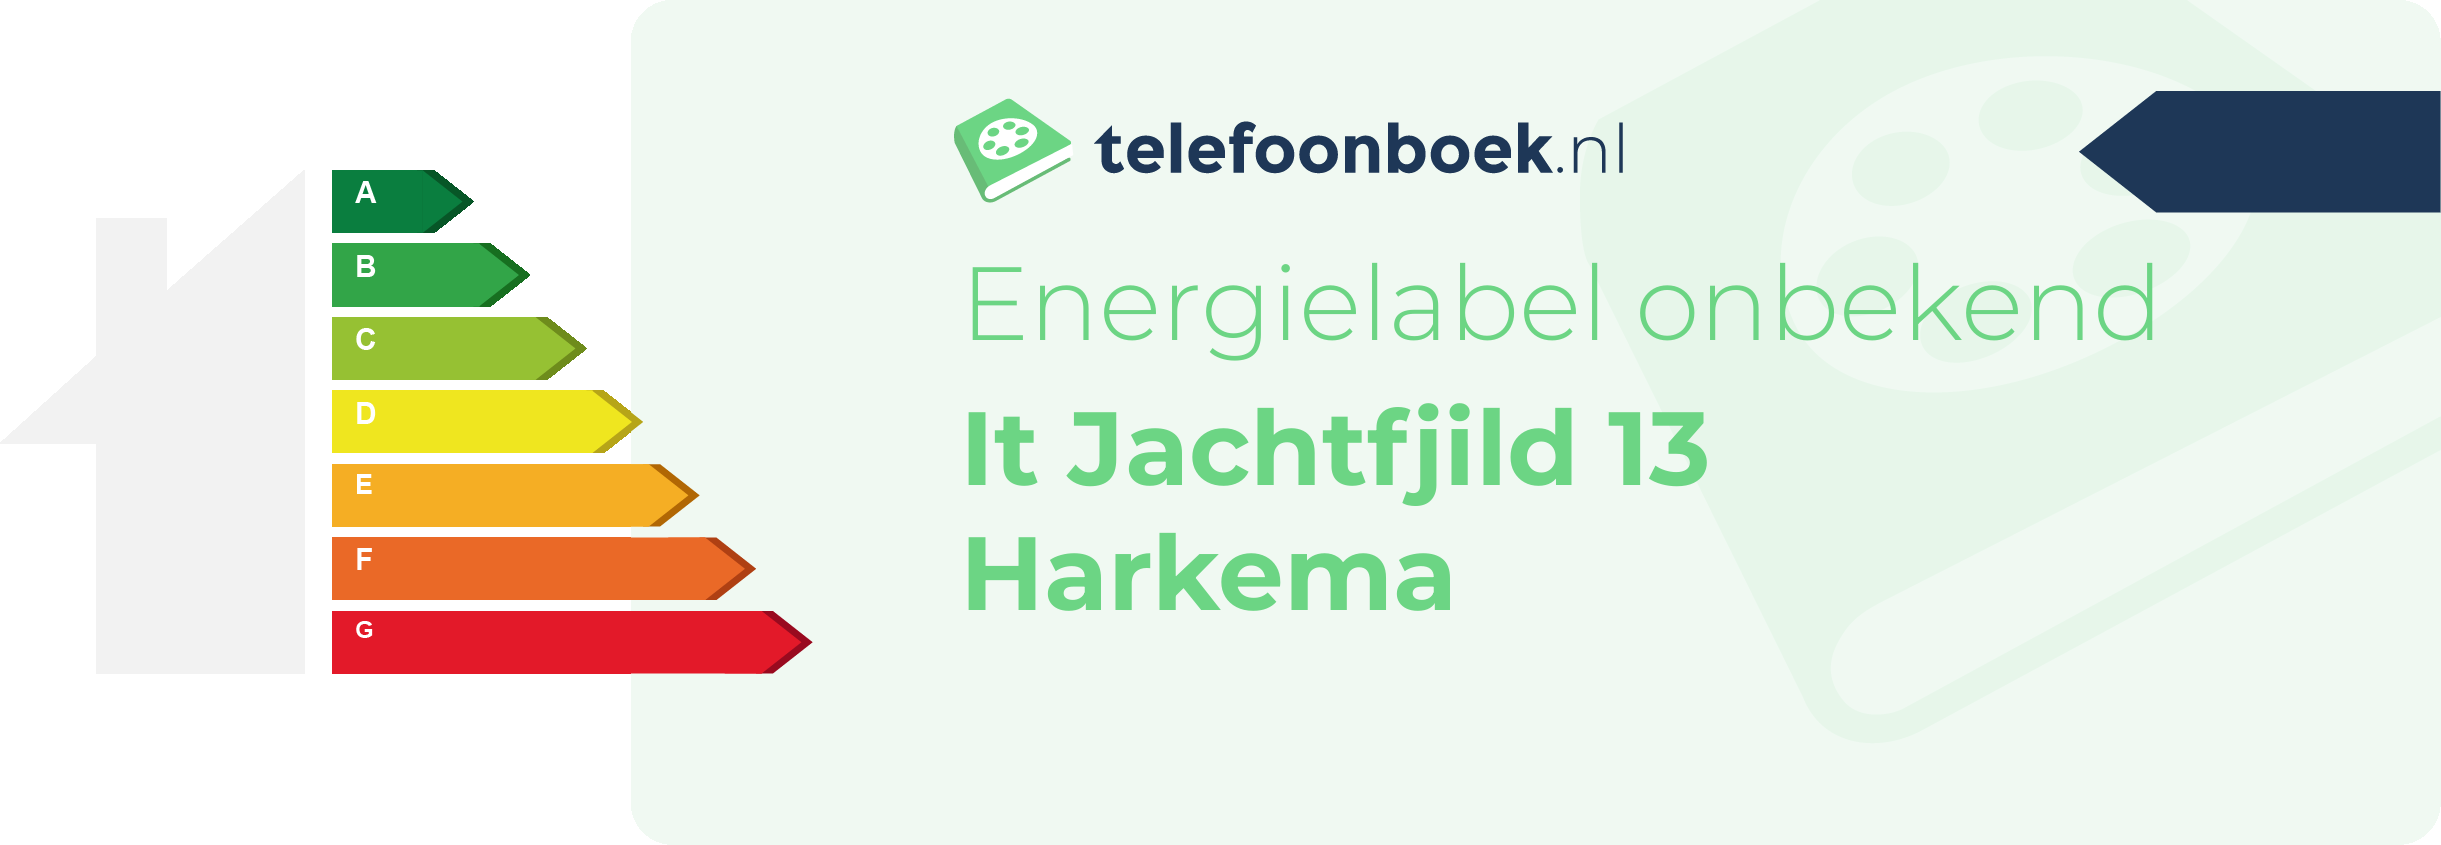 Energielabel It Jachtfjild 13 Harkema